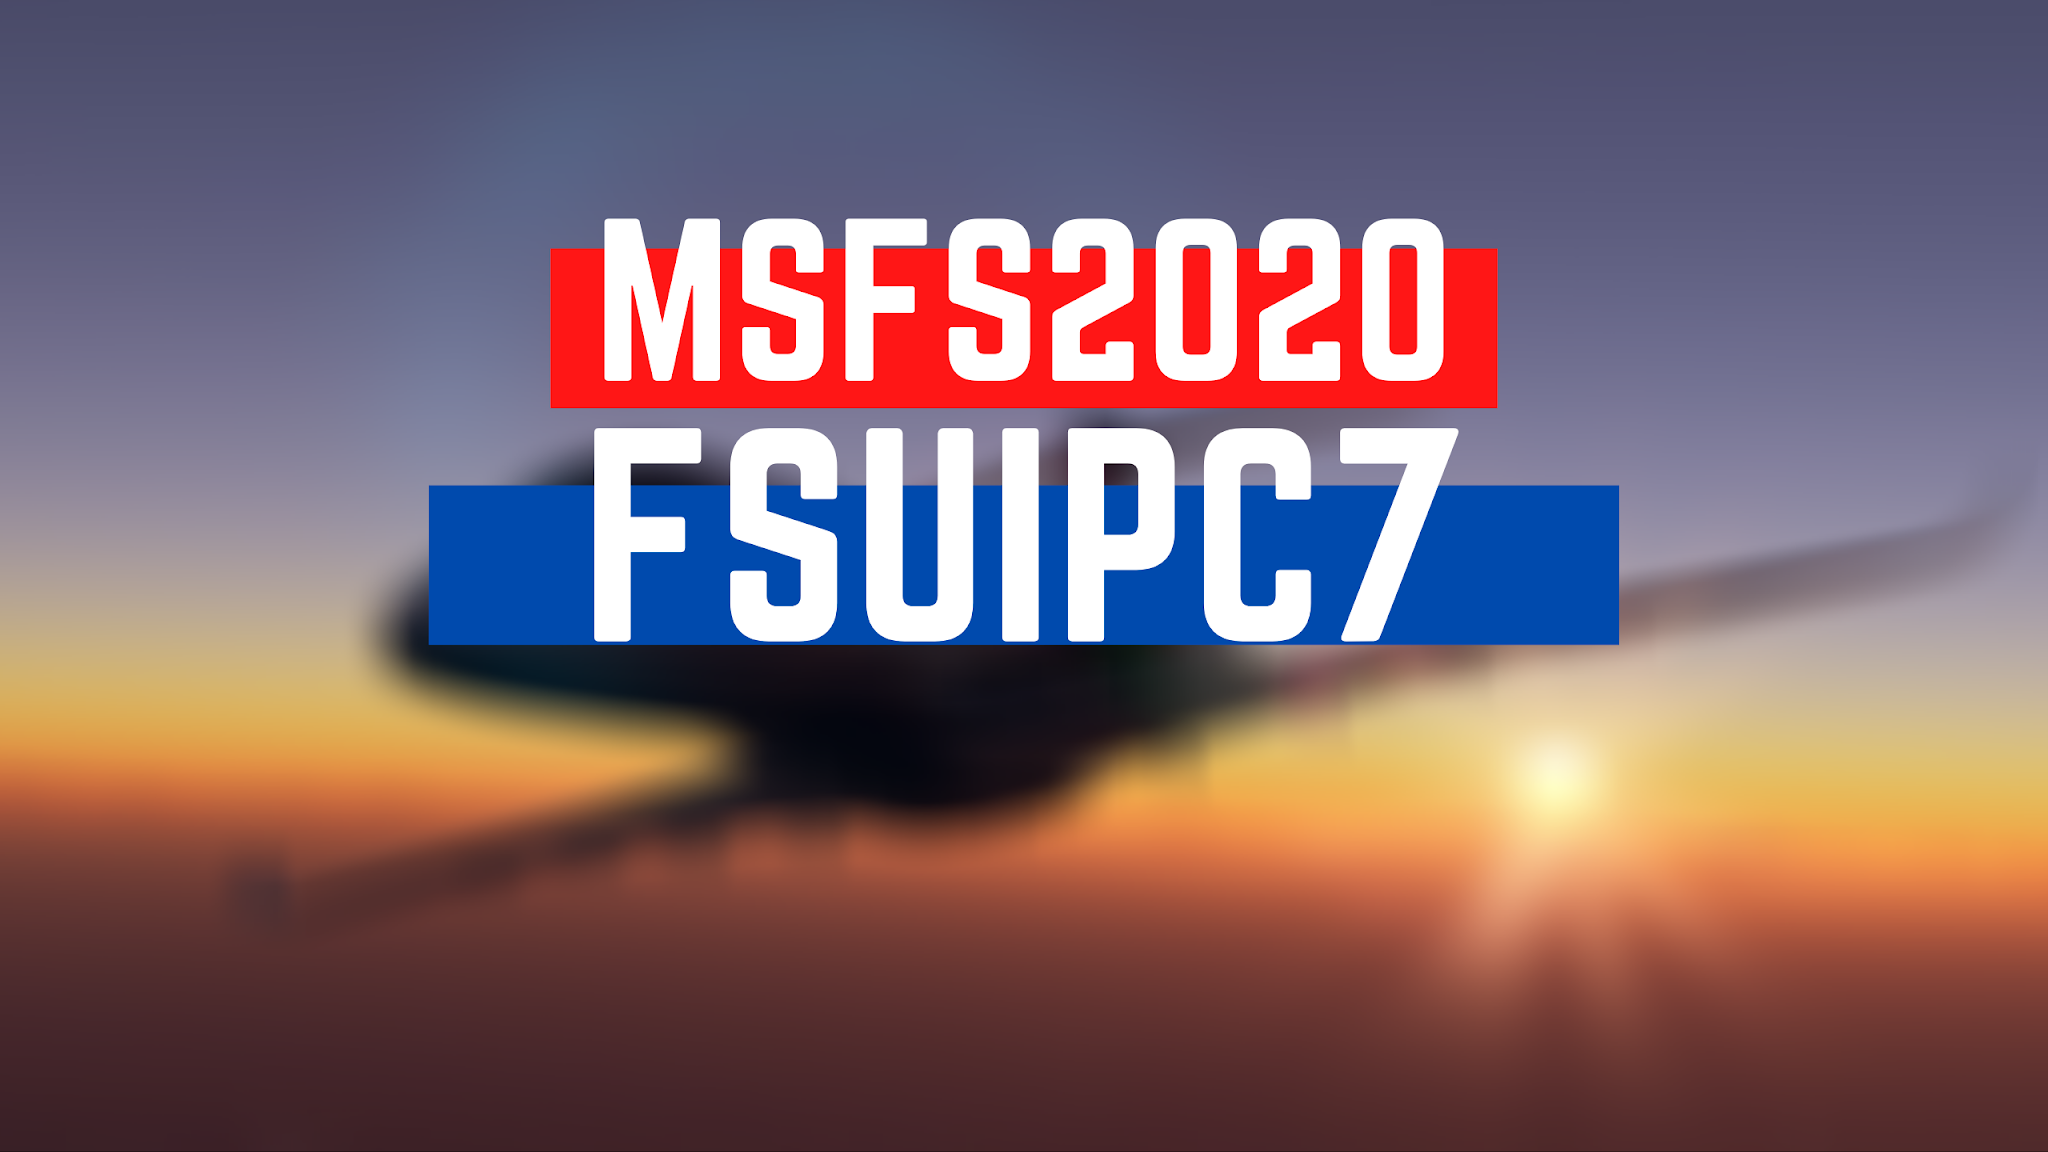 fsuipc for fsx steam download